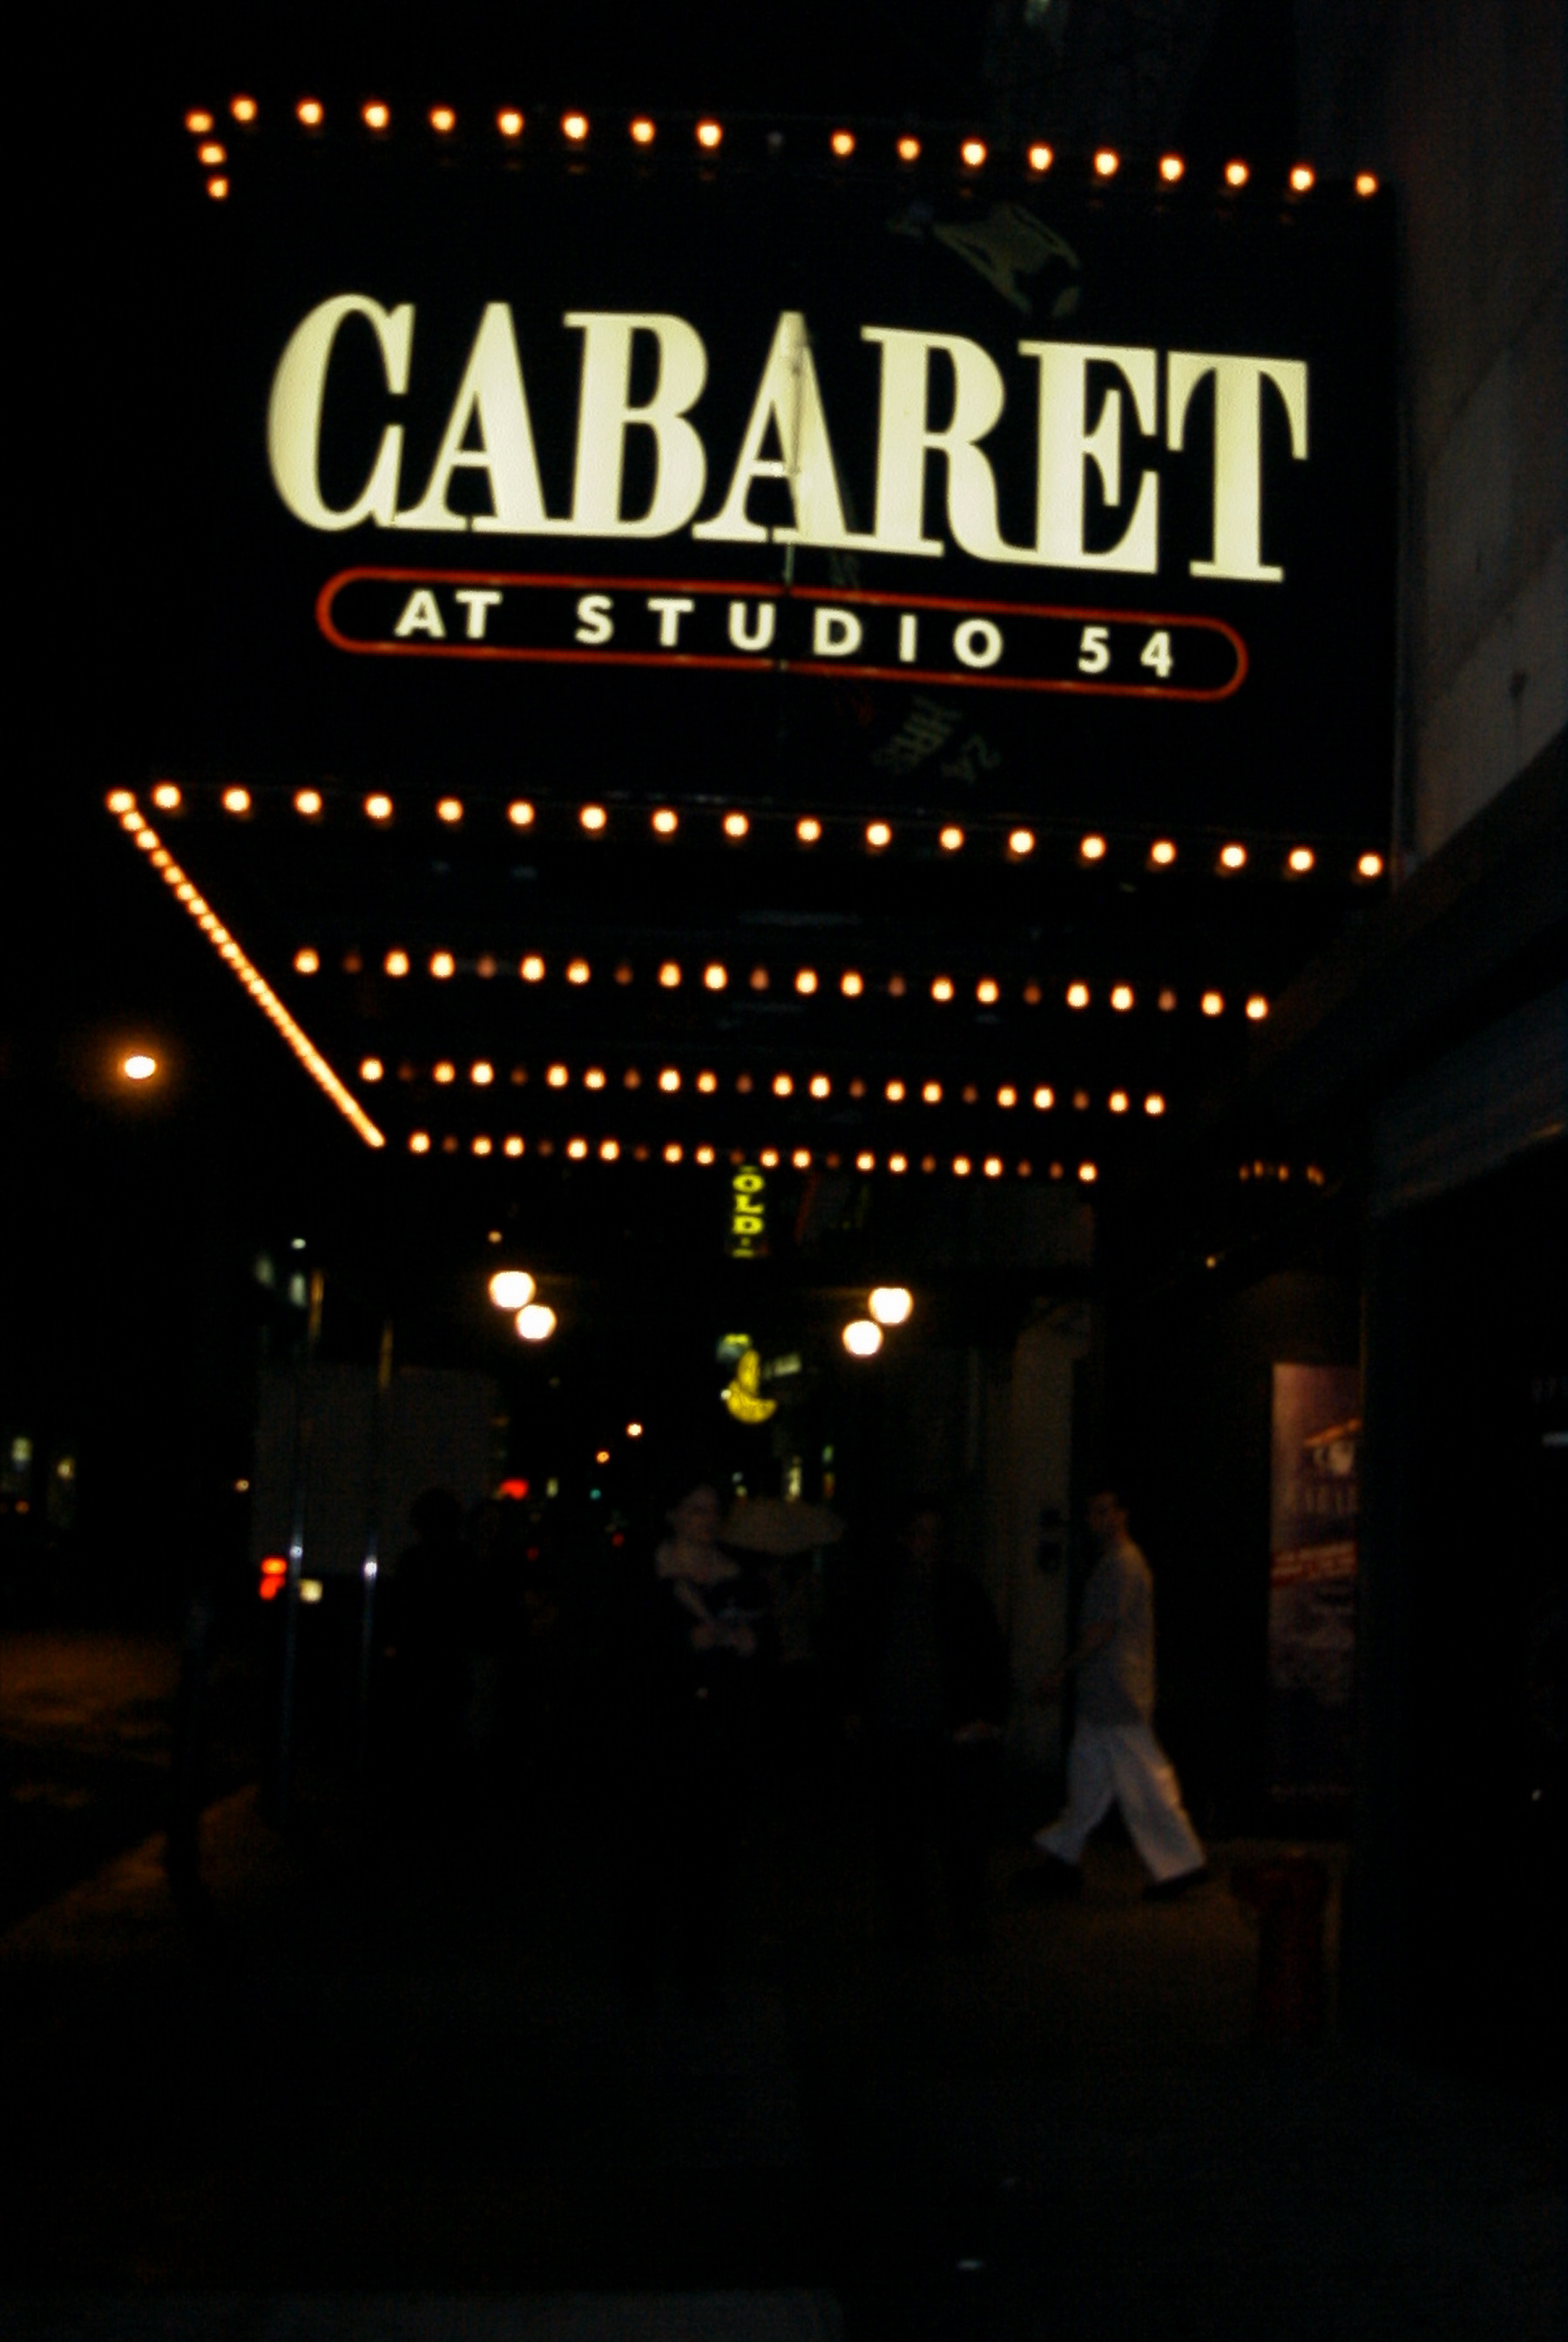 Cabaret at Studio 54